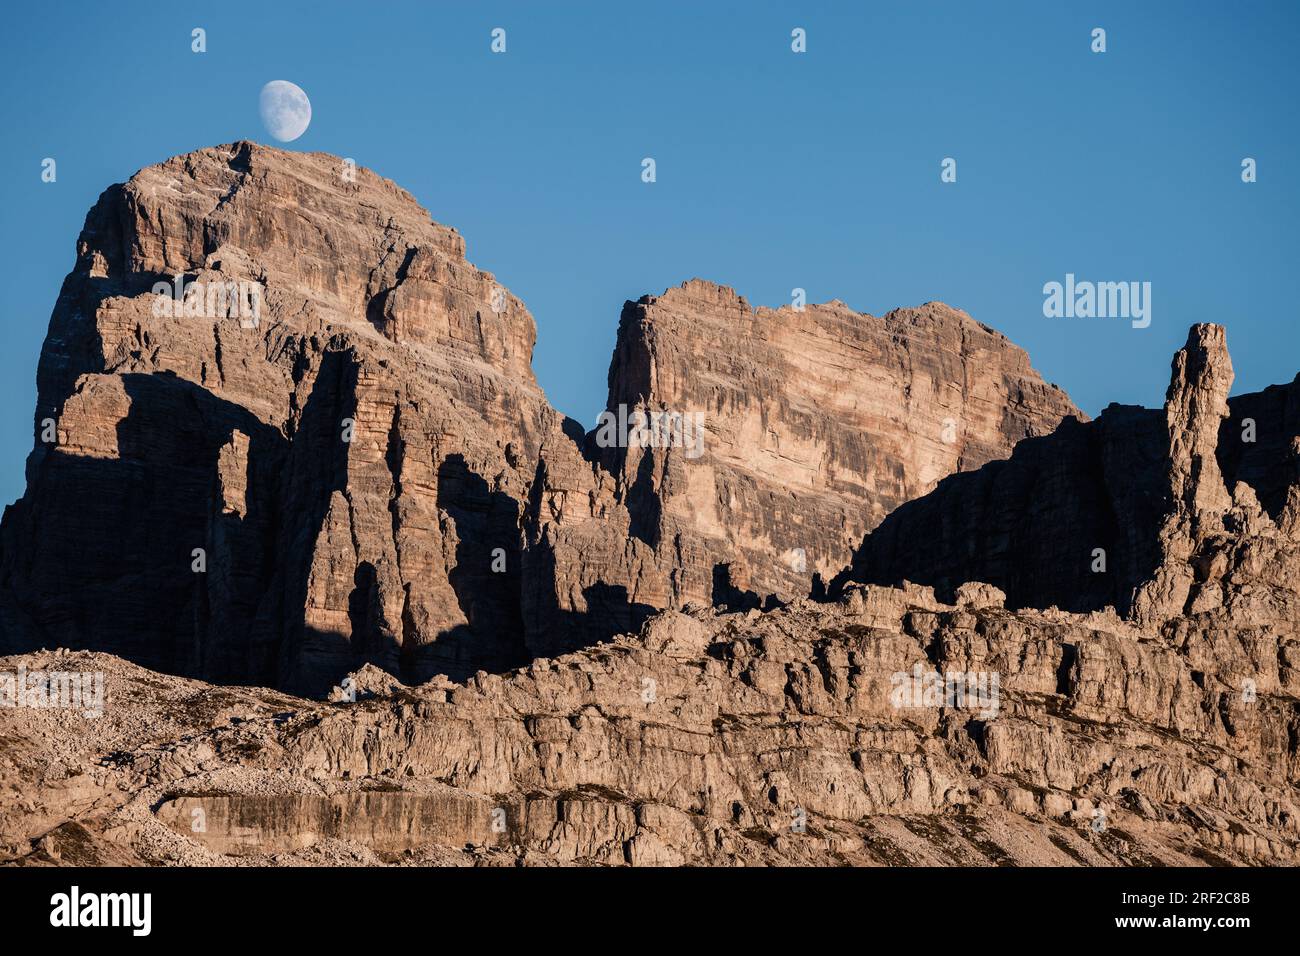 Sommets des montagnes rocheuses à l'heure de lever de la lune sur le ciel bleu. Banque D'Images